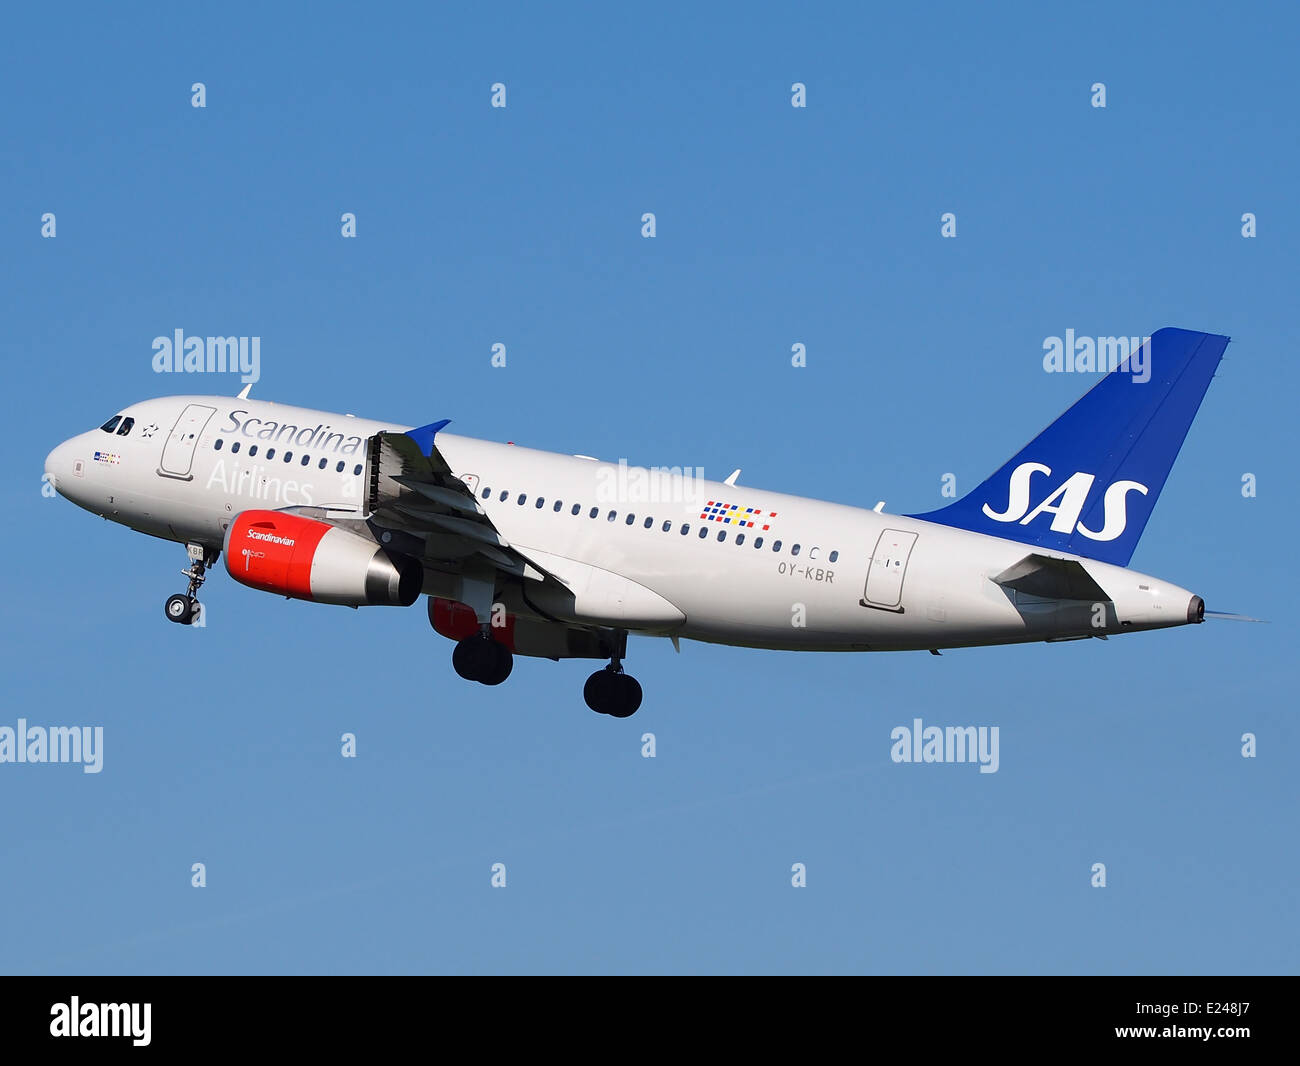 OY-KBR SAS Scandinavian Airlines Airbus A319-131 le décollage de l'aéroport de Schiphol (AMS - EHAM), aux Pays-Bas, 16mai2014, pic-3 Banque D'Images